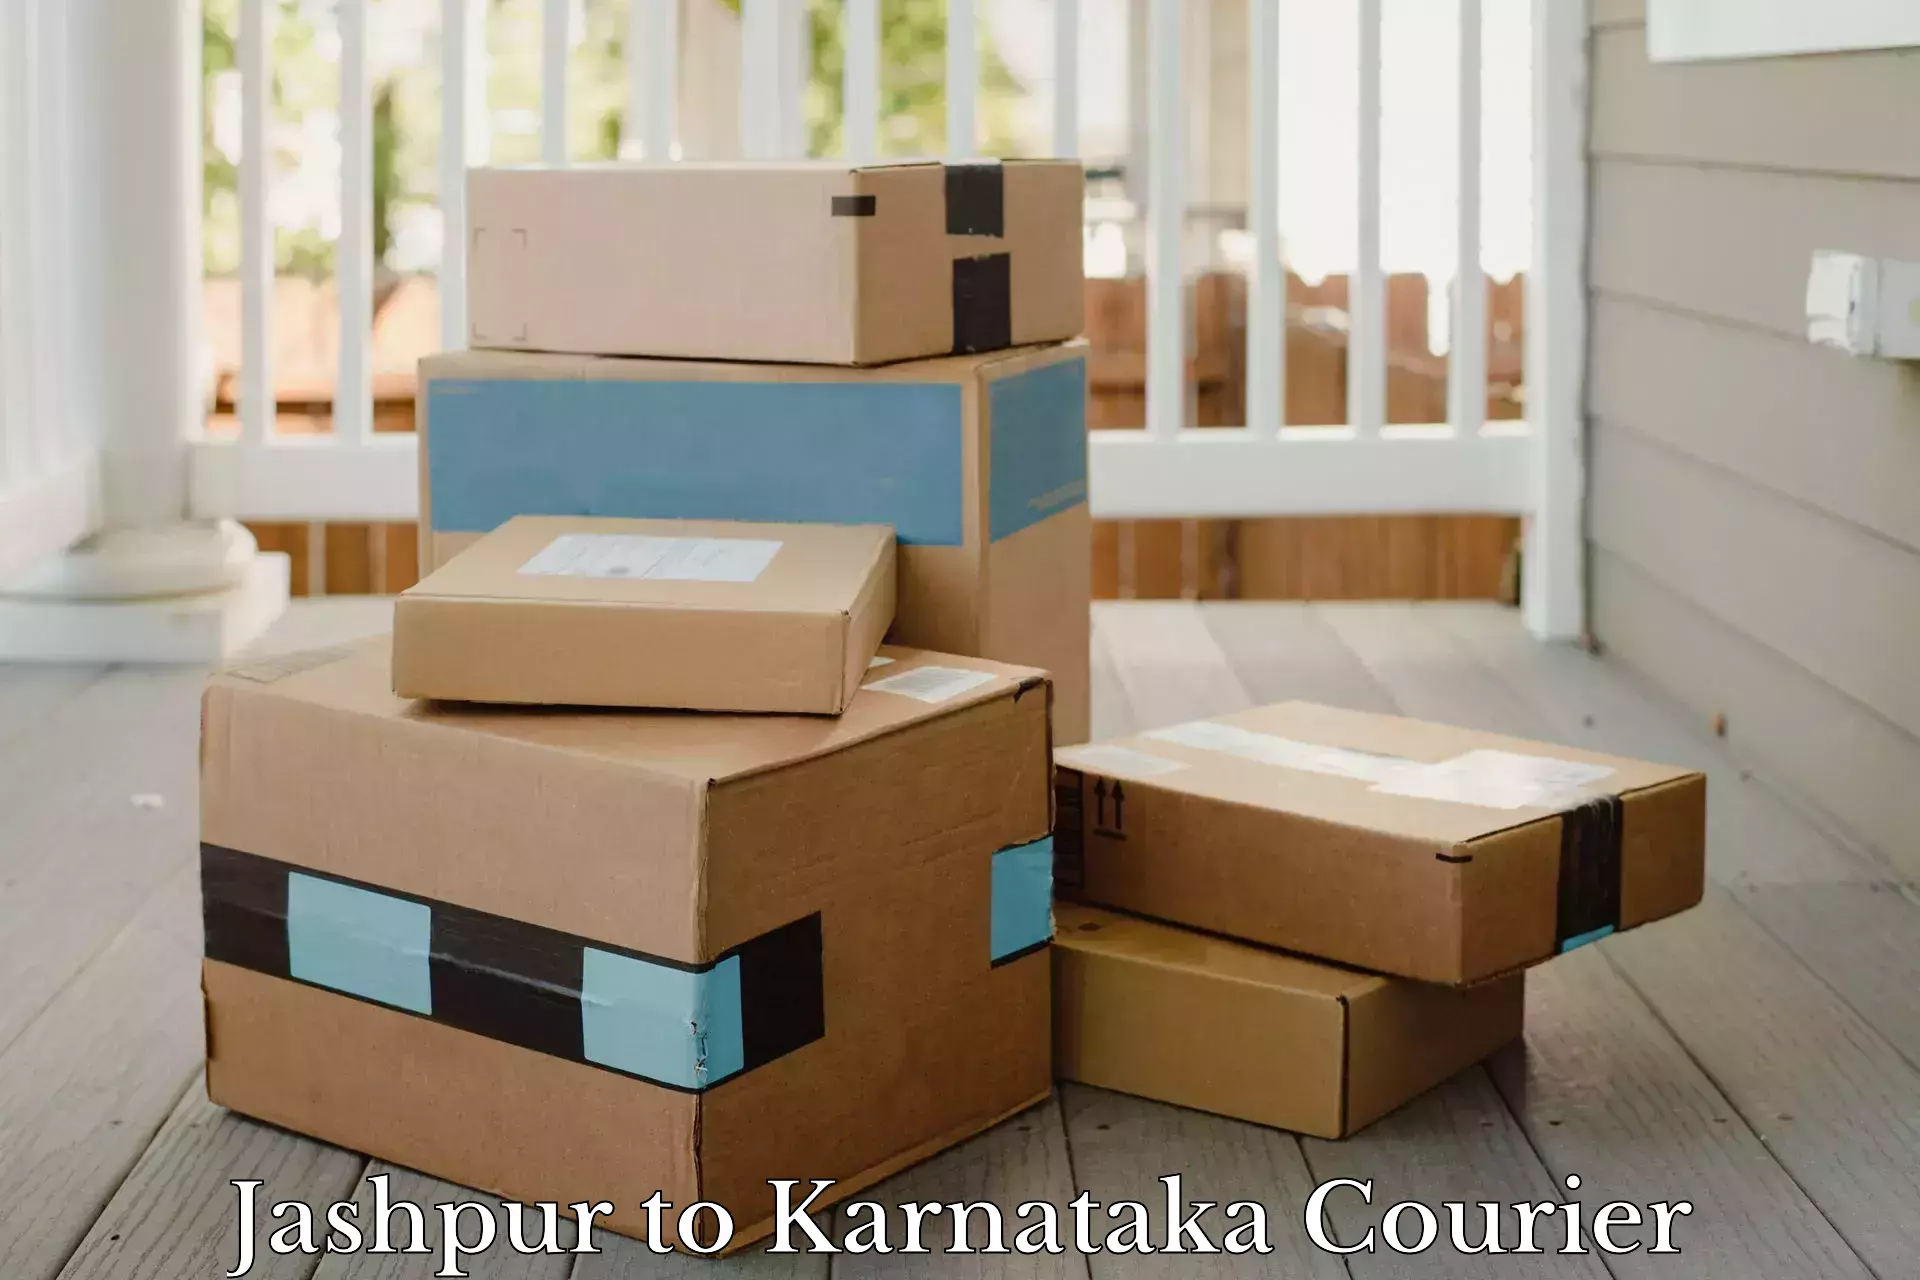 Weekend courier service Jashpur to Karnataka